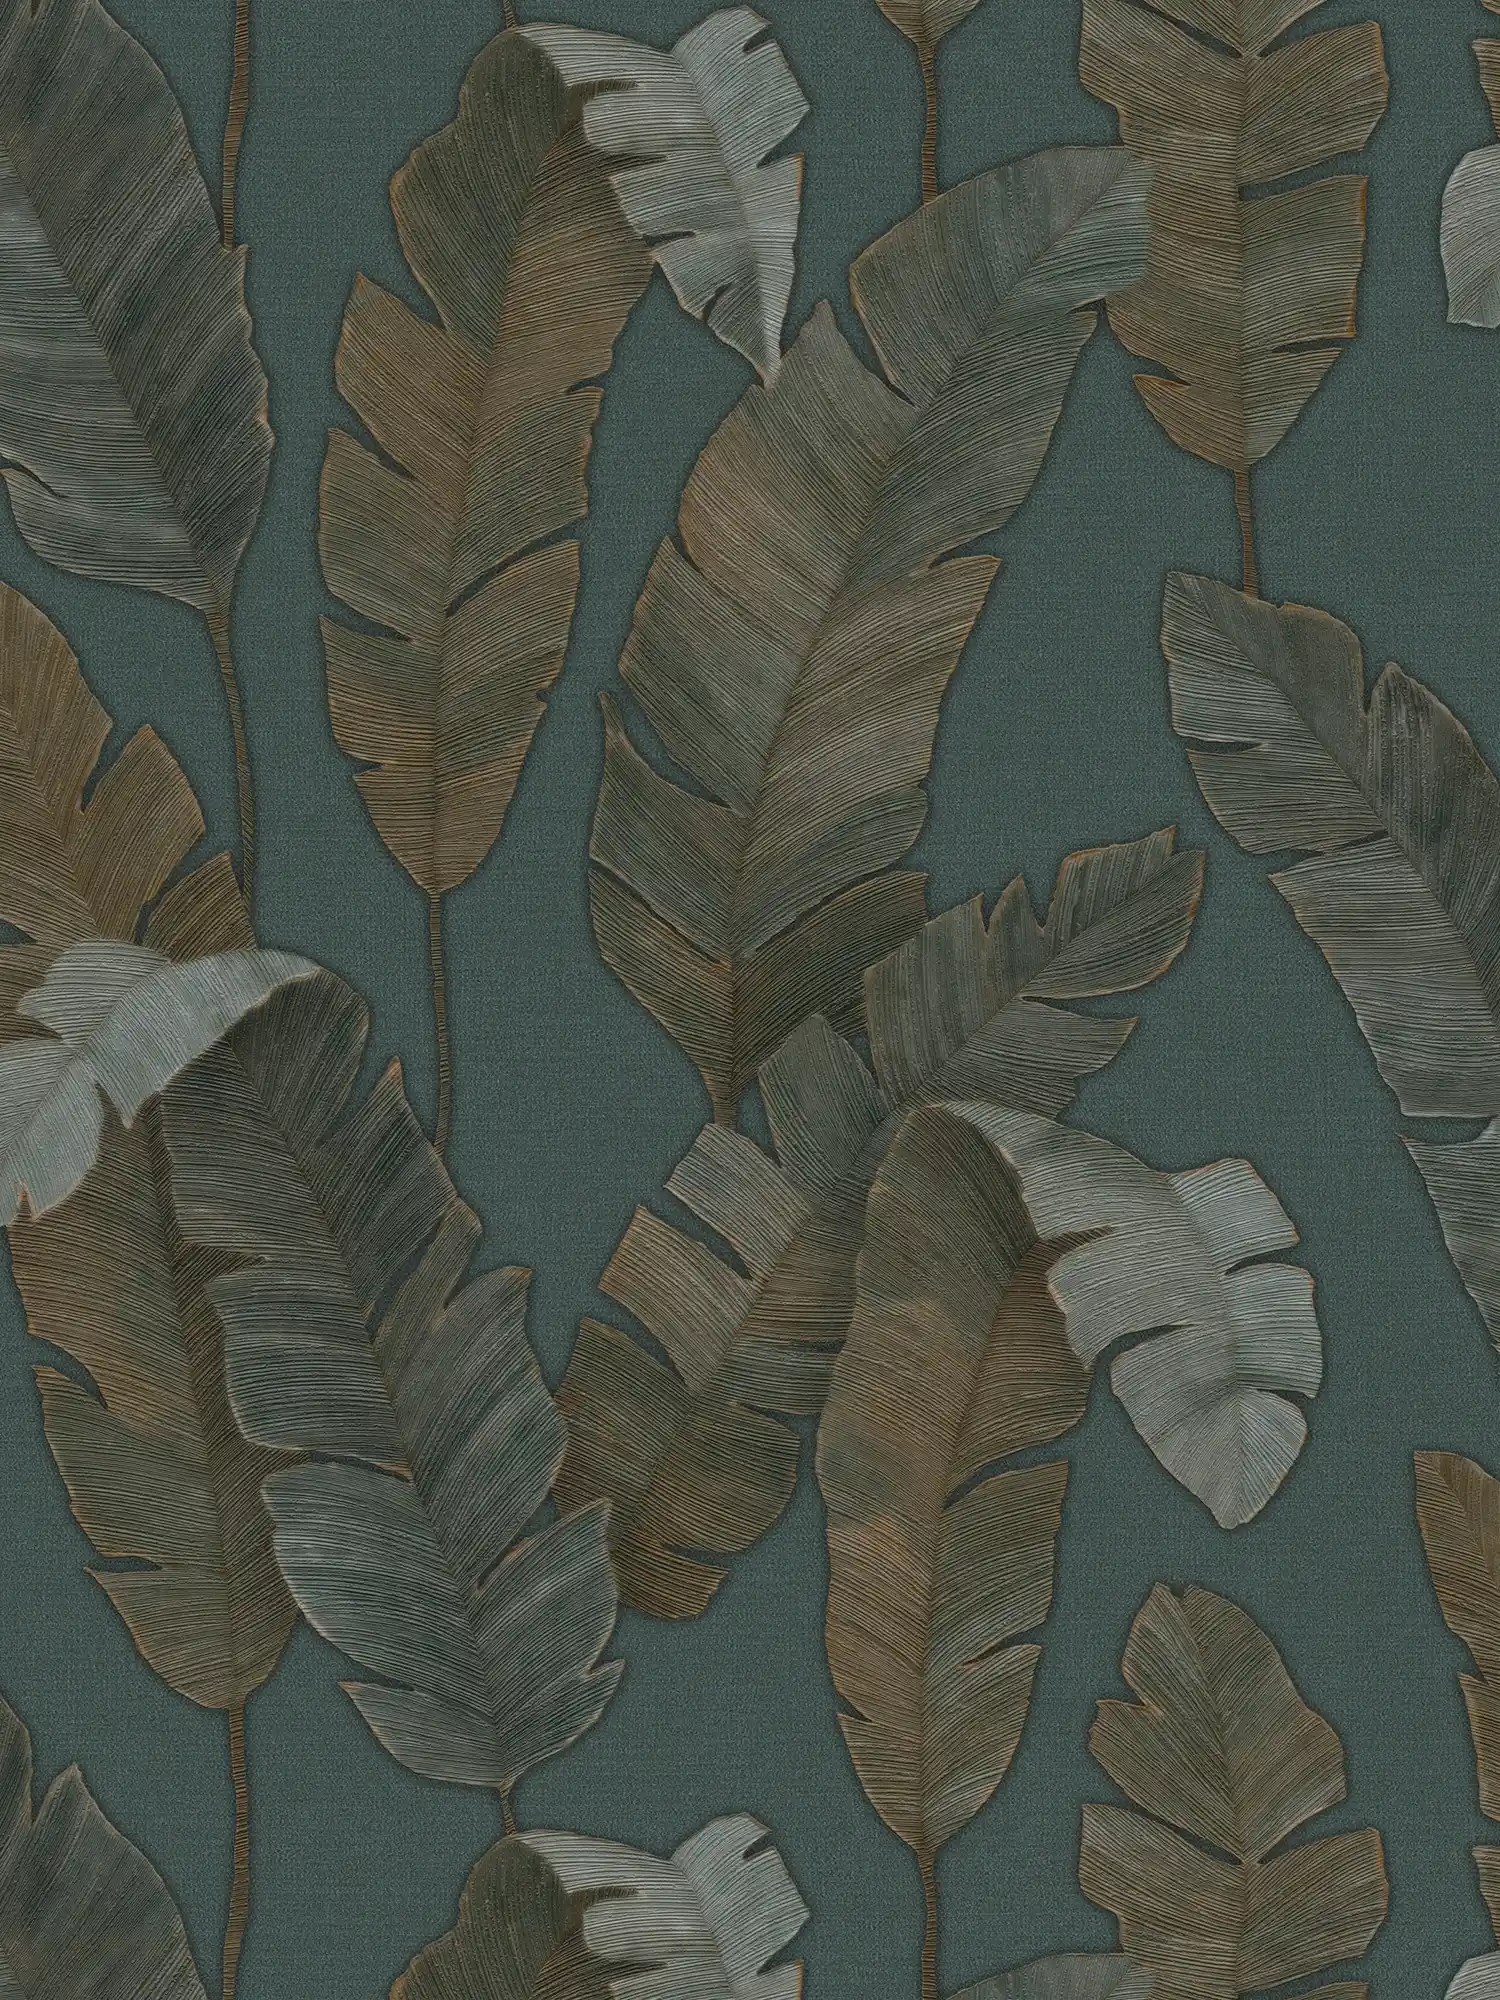         Vliestapete mit große Palmenblätter in dunkler Farbe – Petrol, Grün, Braun
    